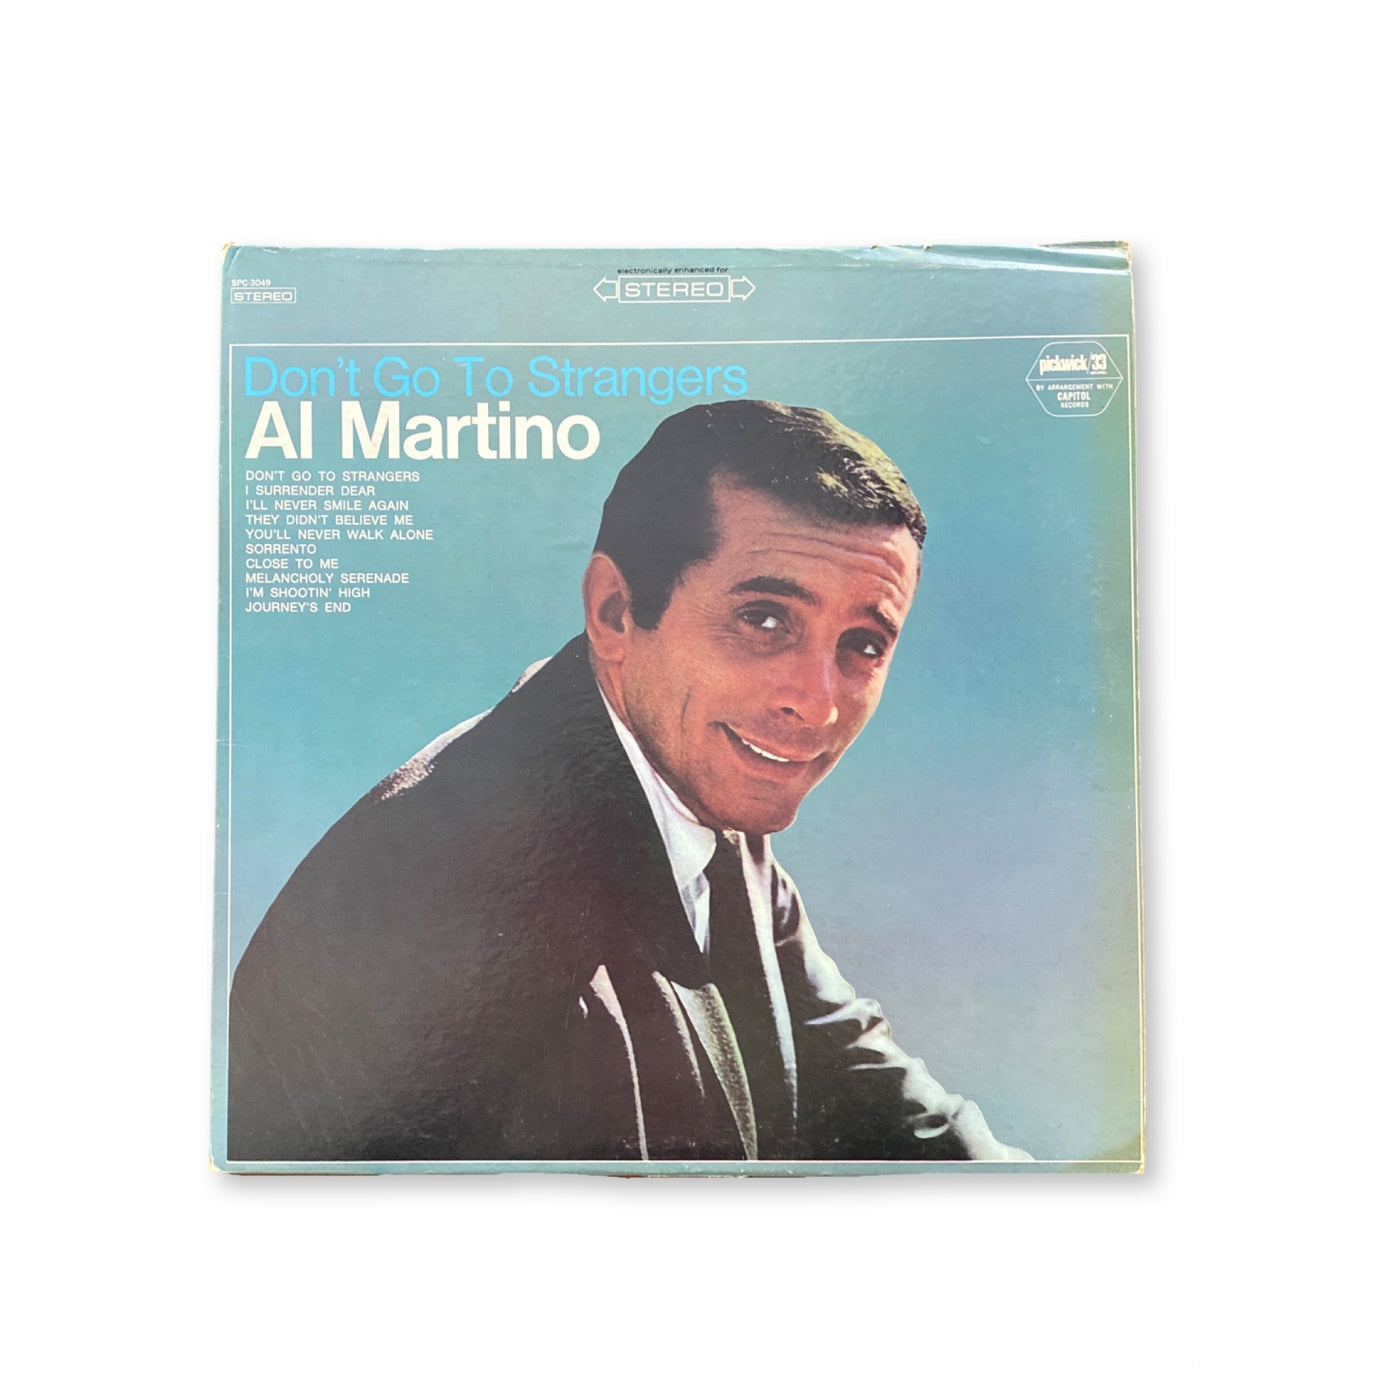 Al Martino - Don't Go To Strangers